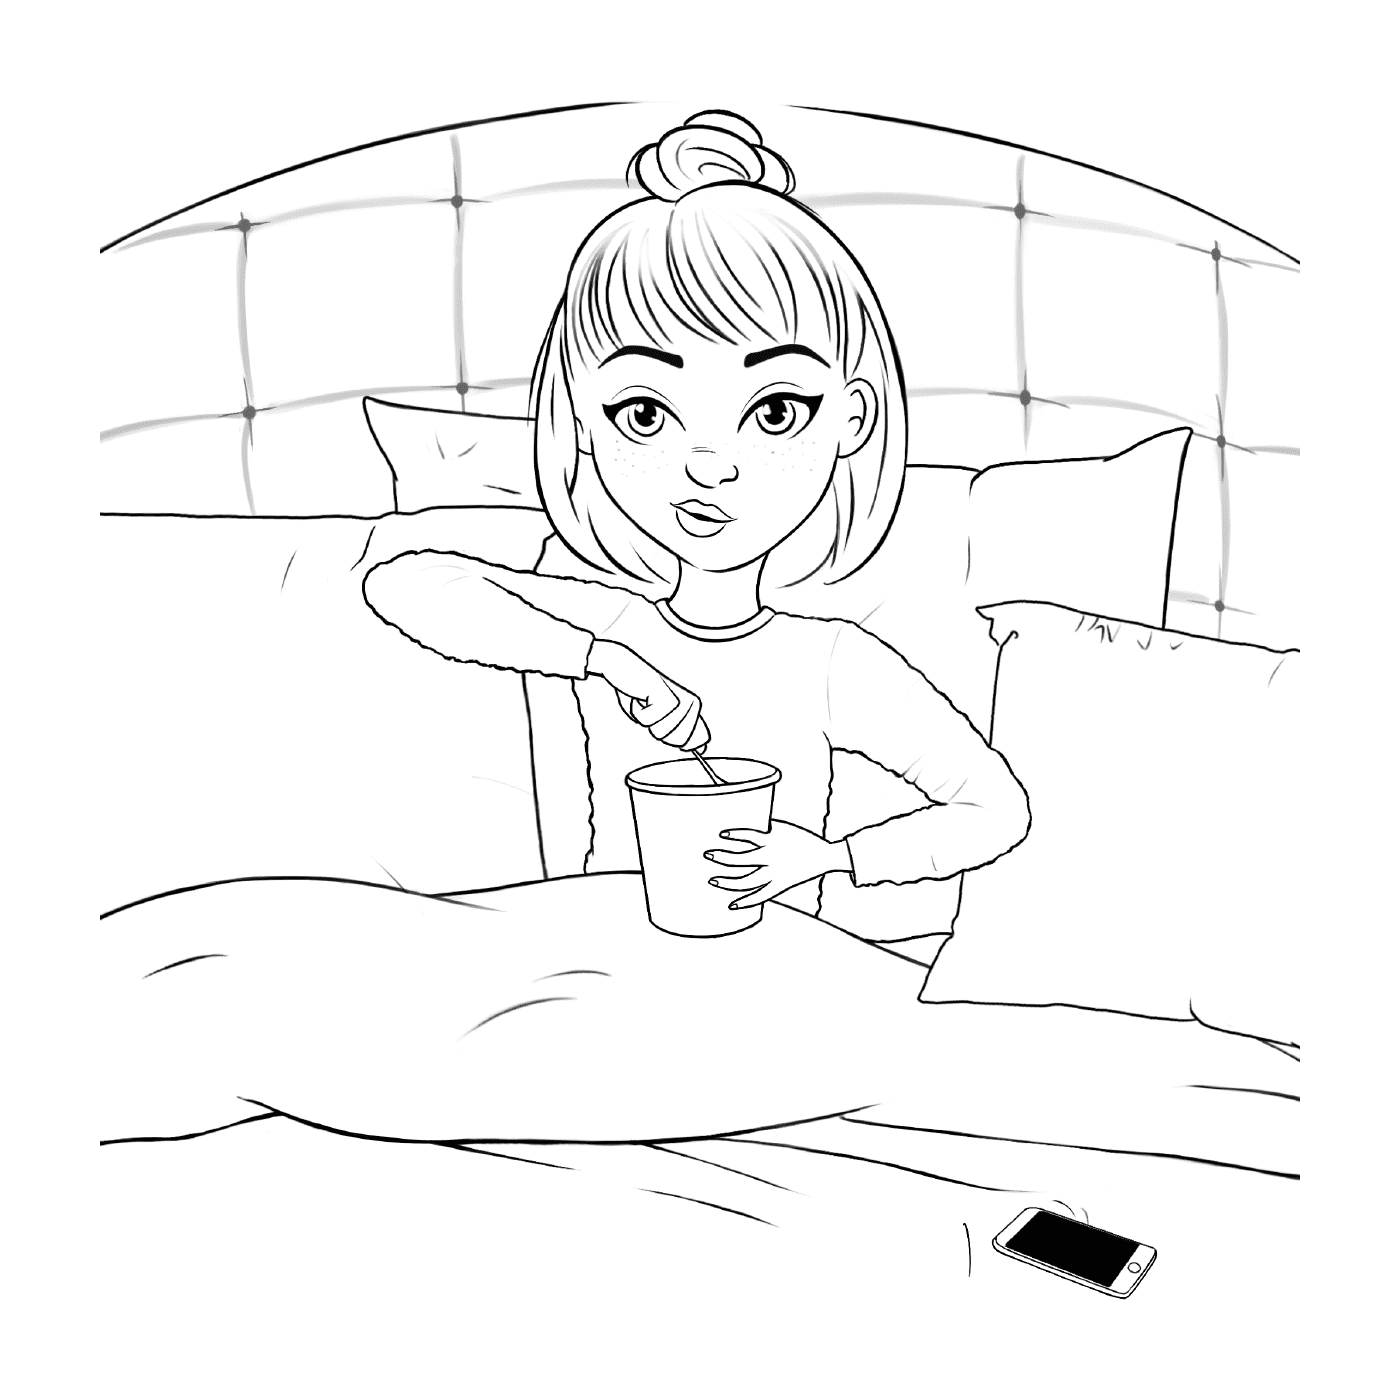  menina adolescente na cama com sorvete 